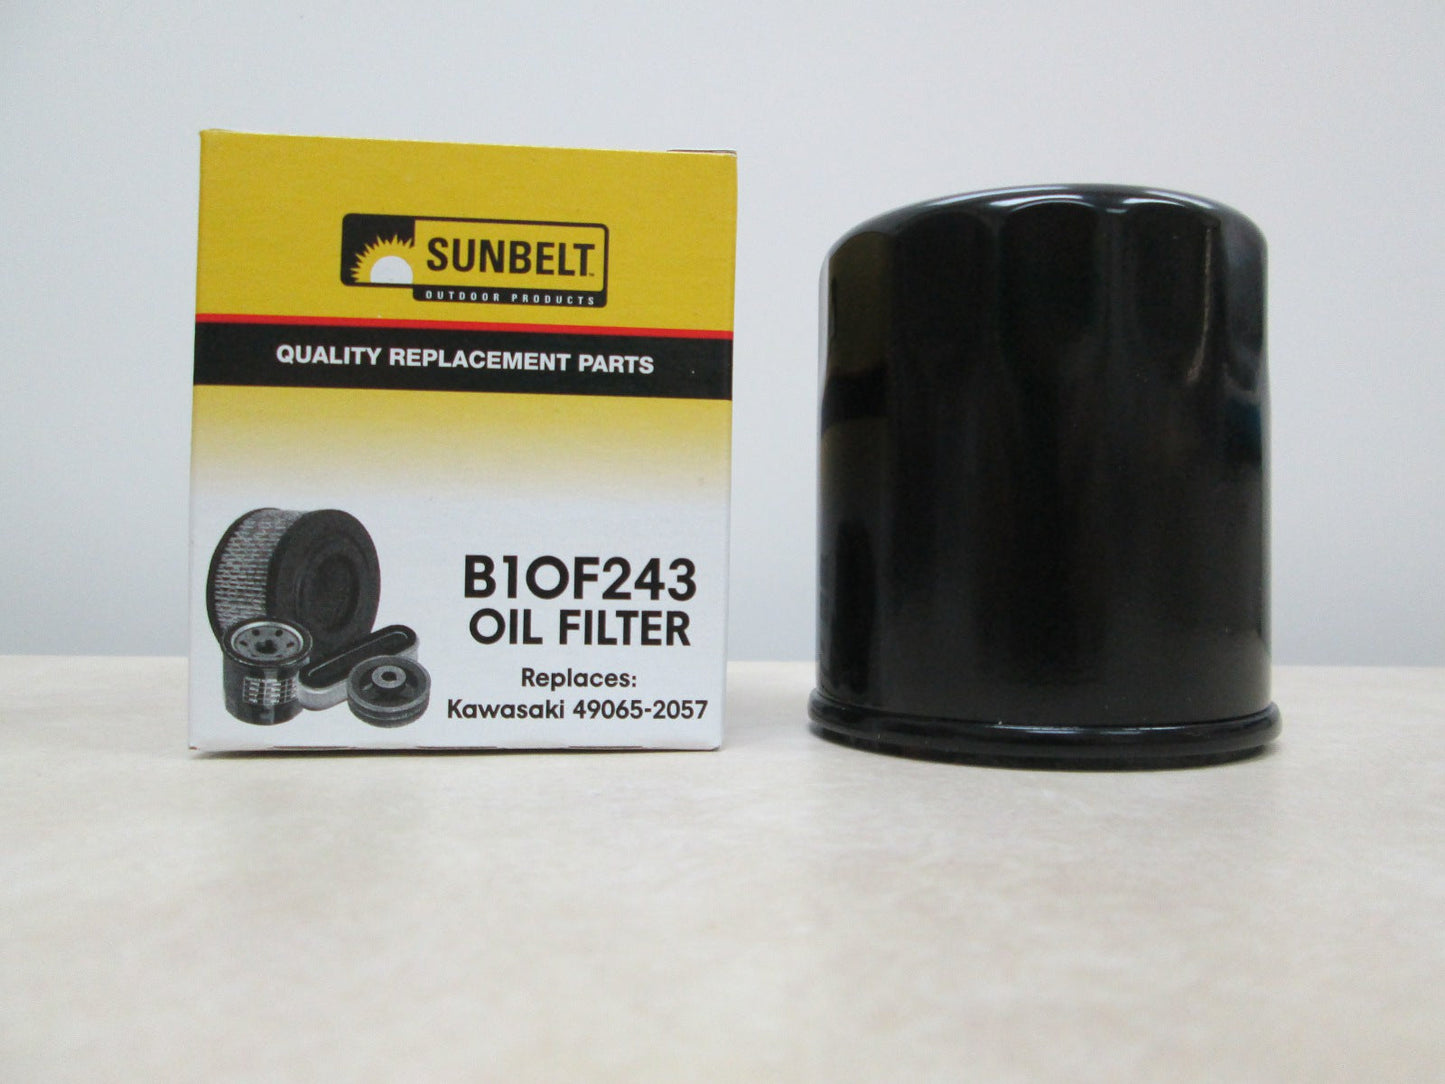 Replacement Oil Filter for John Deere AM107423 Kawasaki - B1OF243